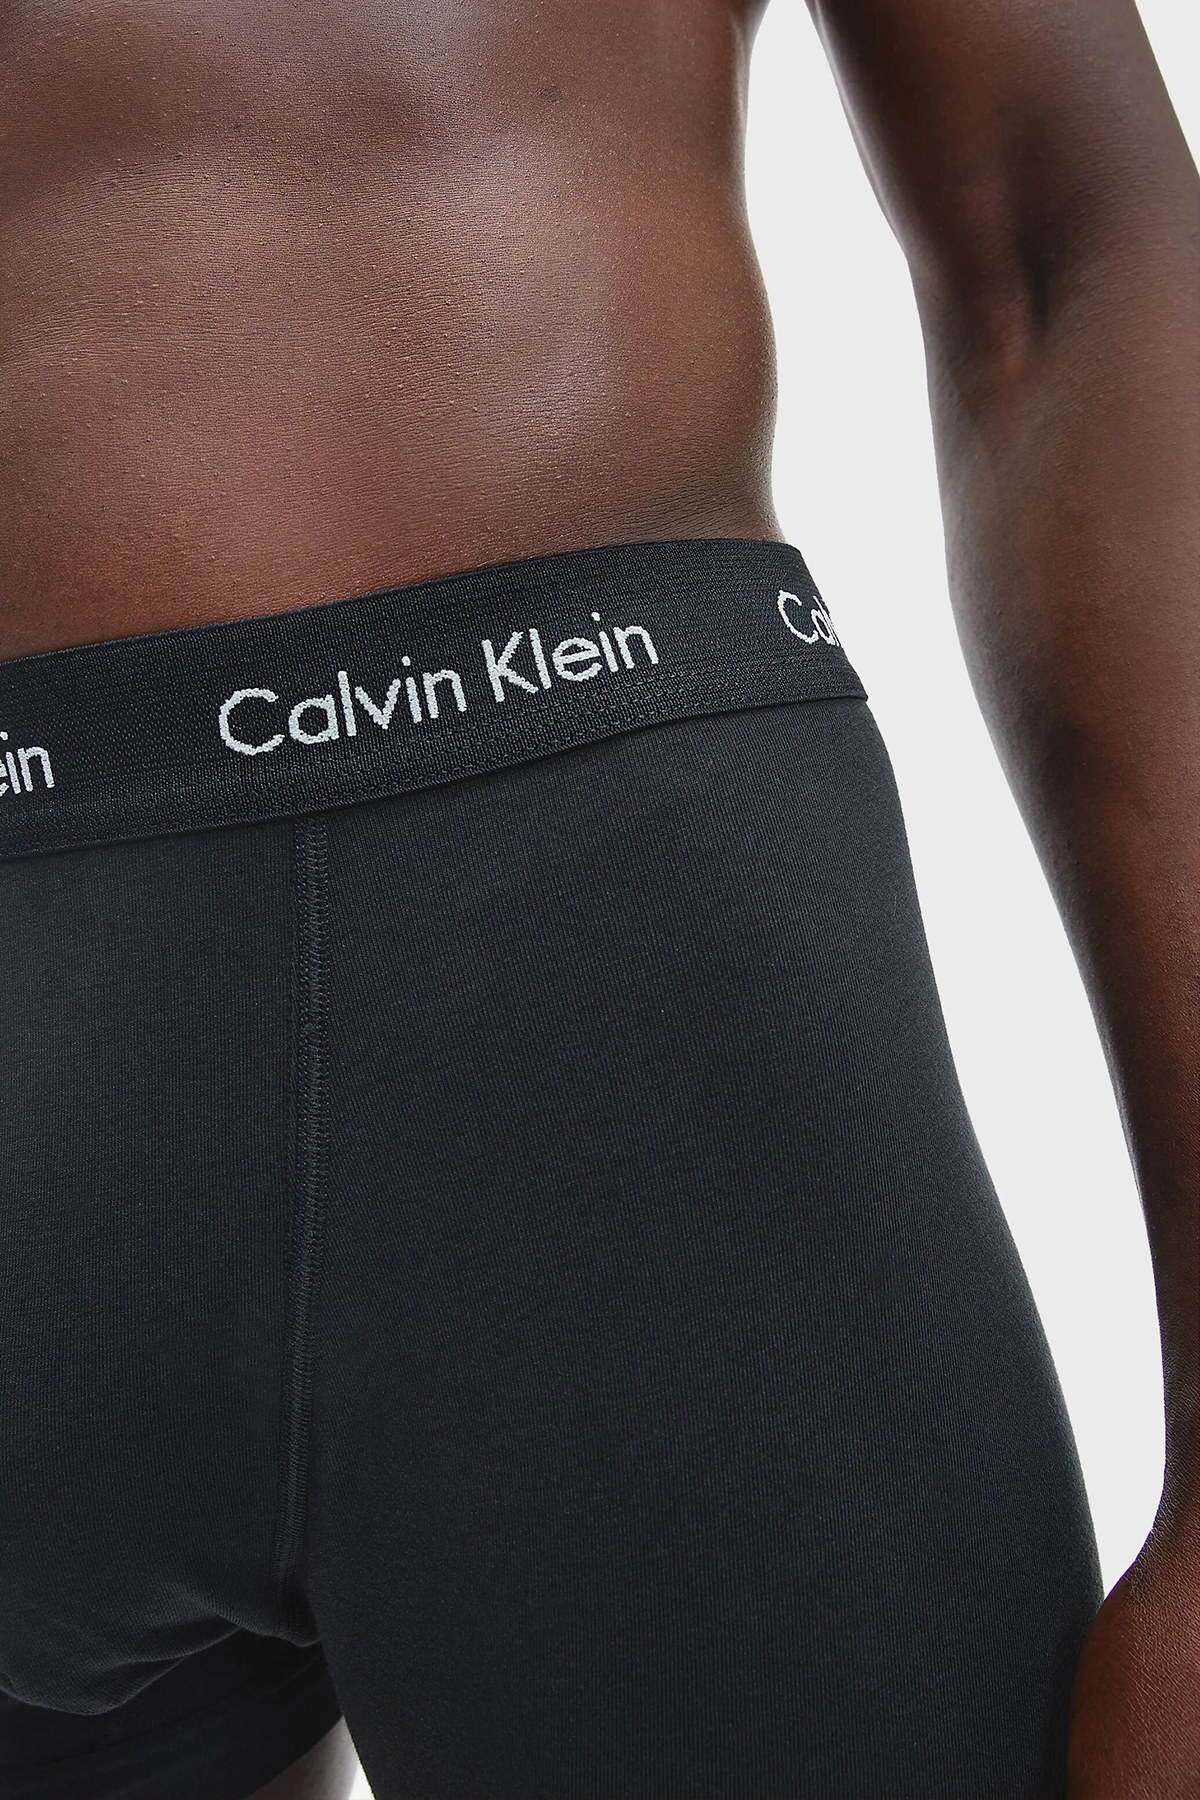 Calvin Klein Pamuklu 3 Pack Erkek Boxer 0000U2662G XWB SİYAH